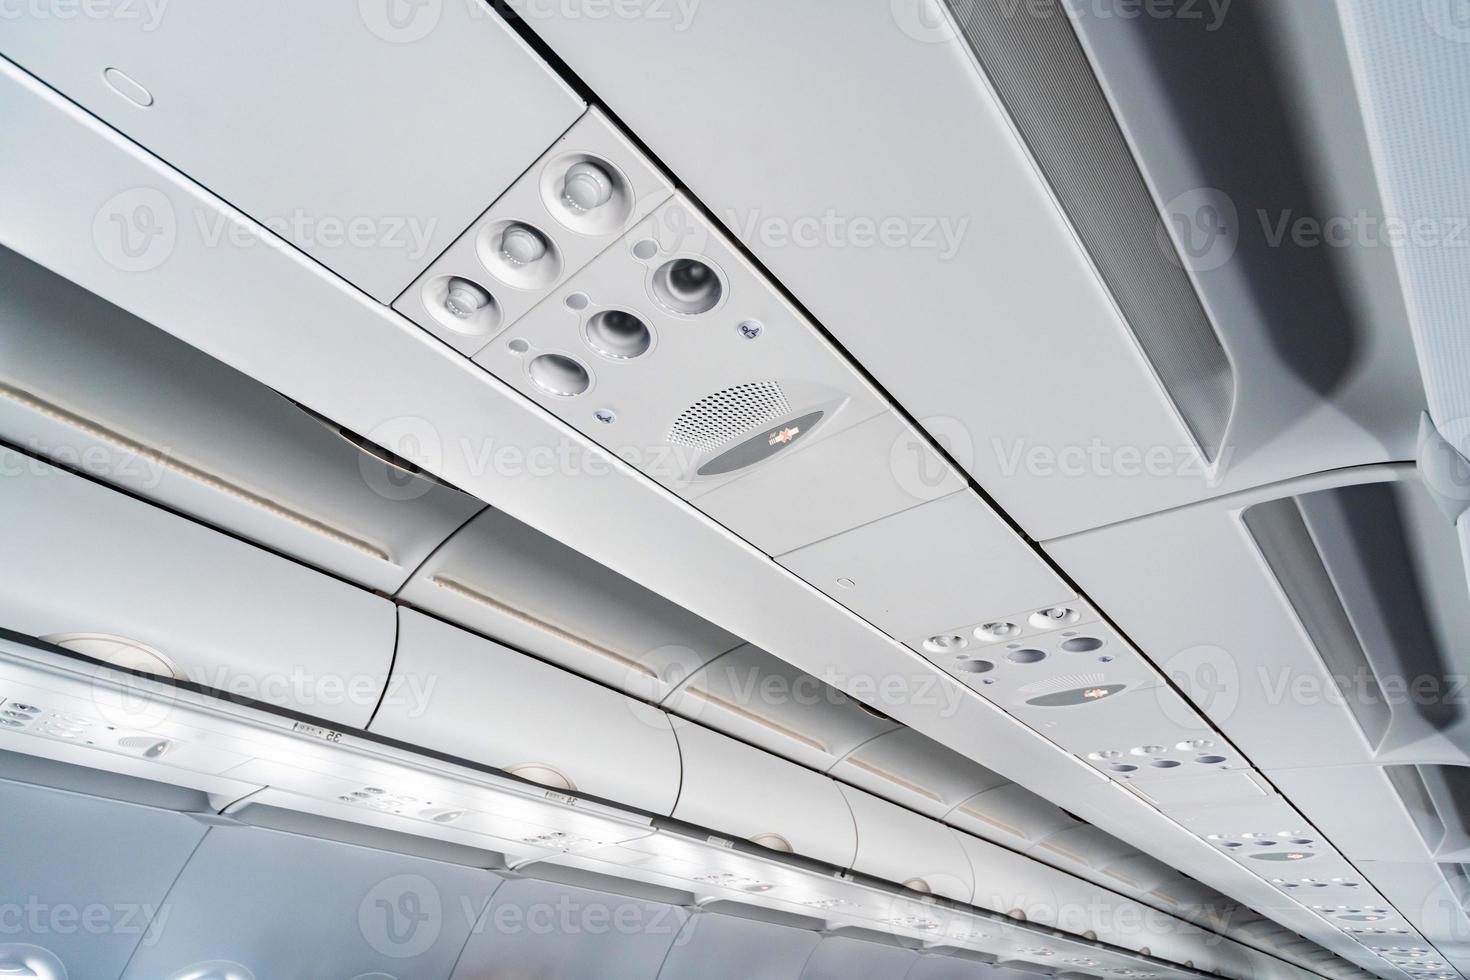 pannello di controllo dell'aria condizionata dell'aeroplano sopra i sedili. aria soffocante nella cabina dell'aeromobile con persone. nuova compagnia aerea low cost foto